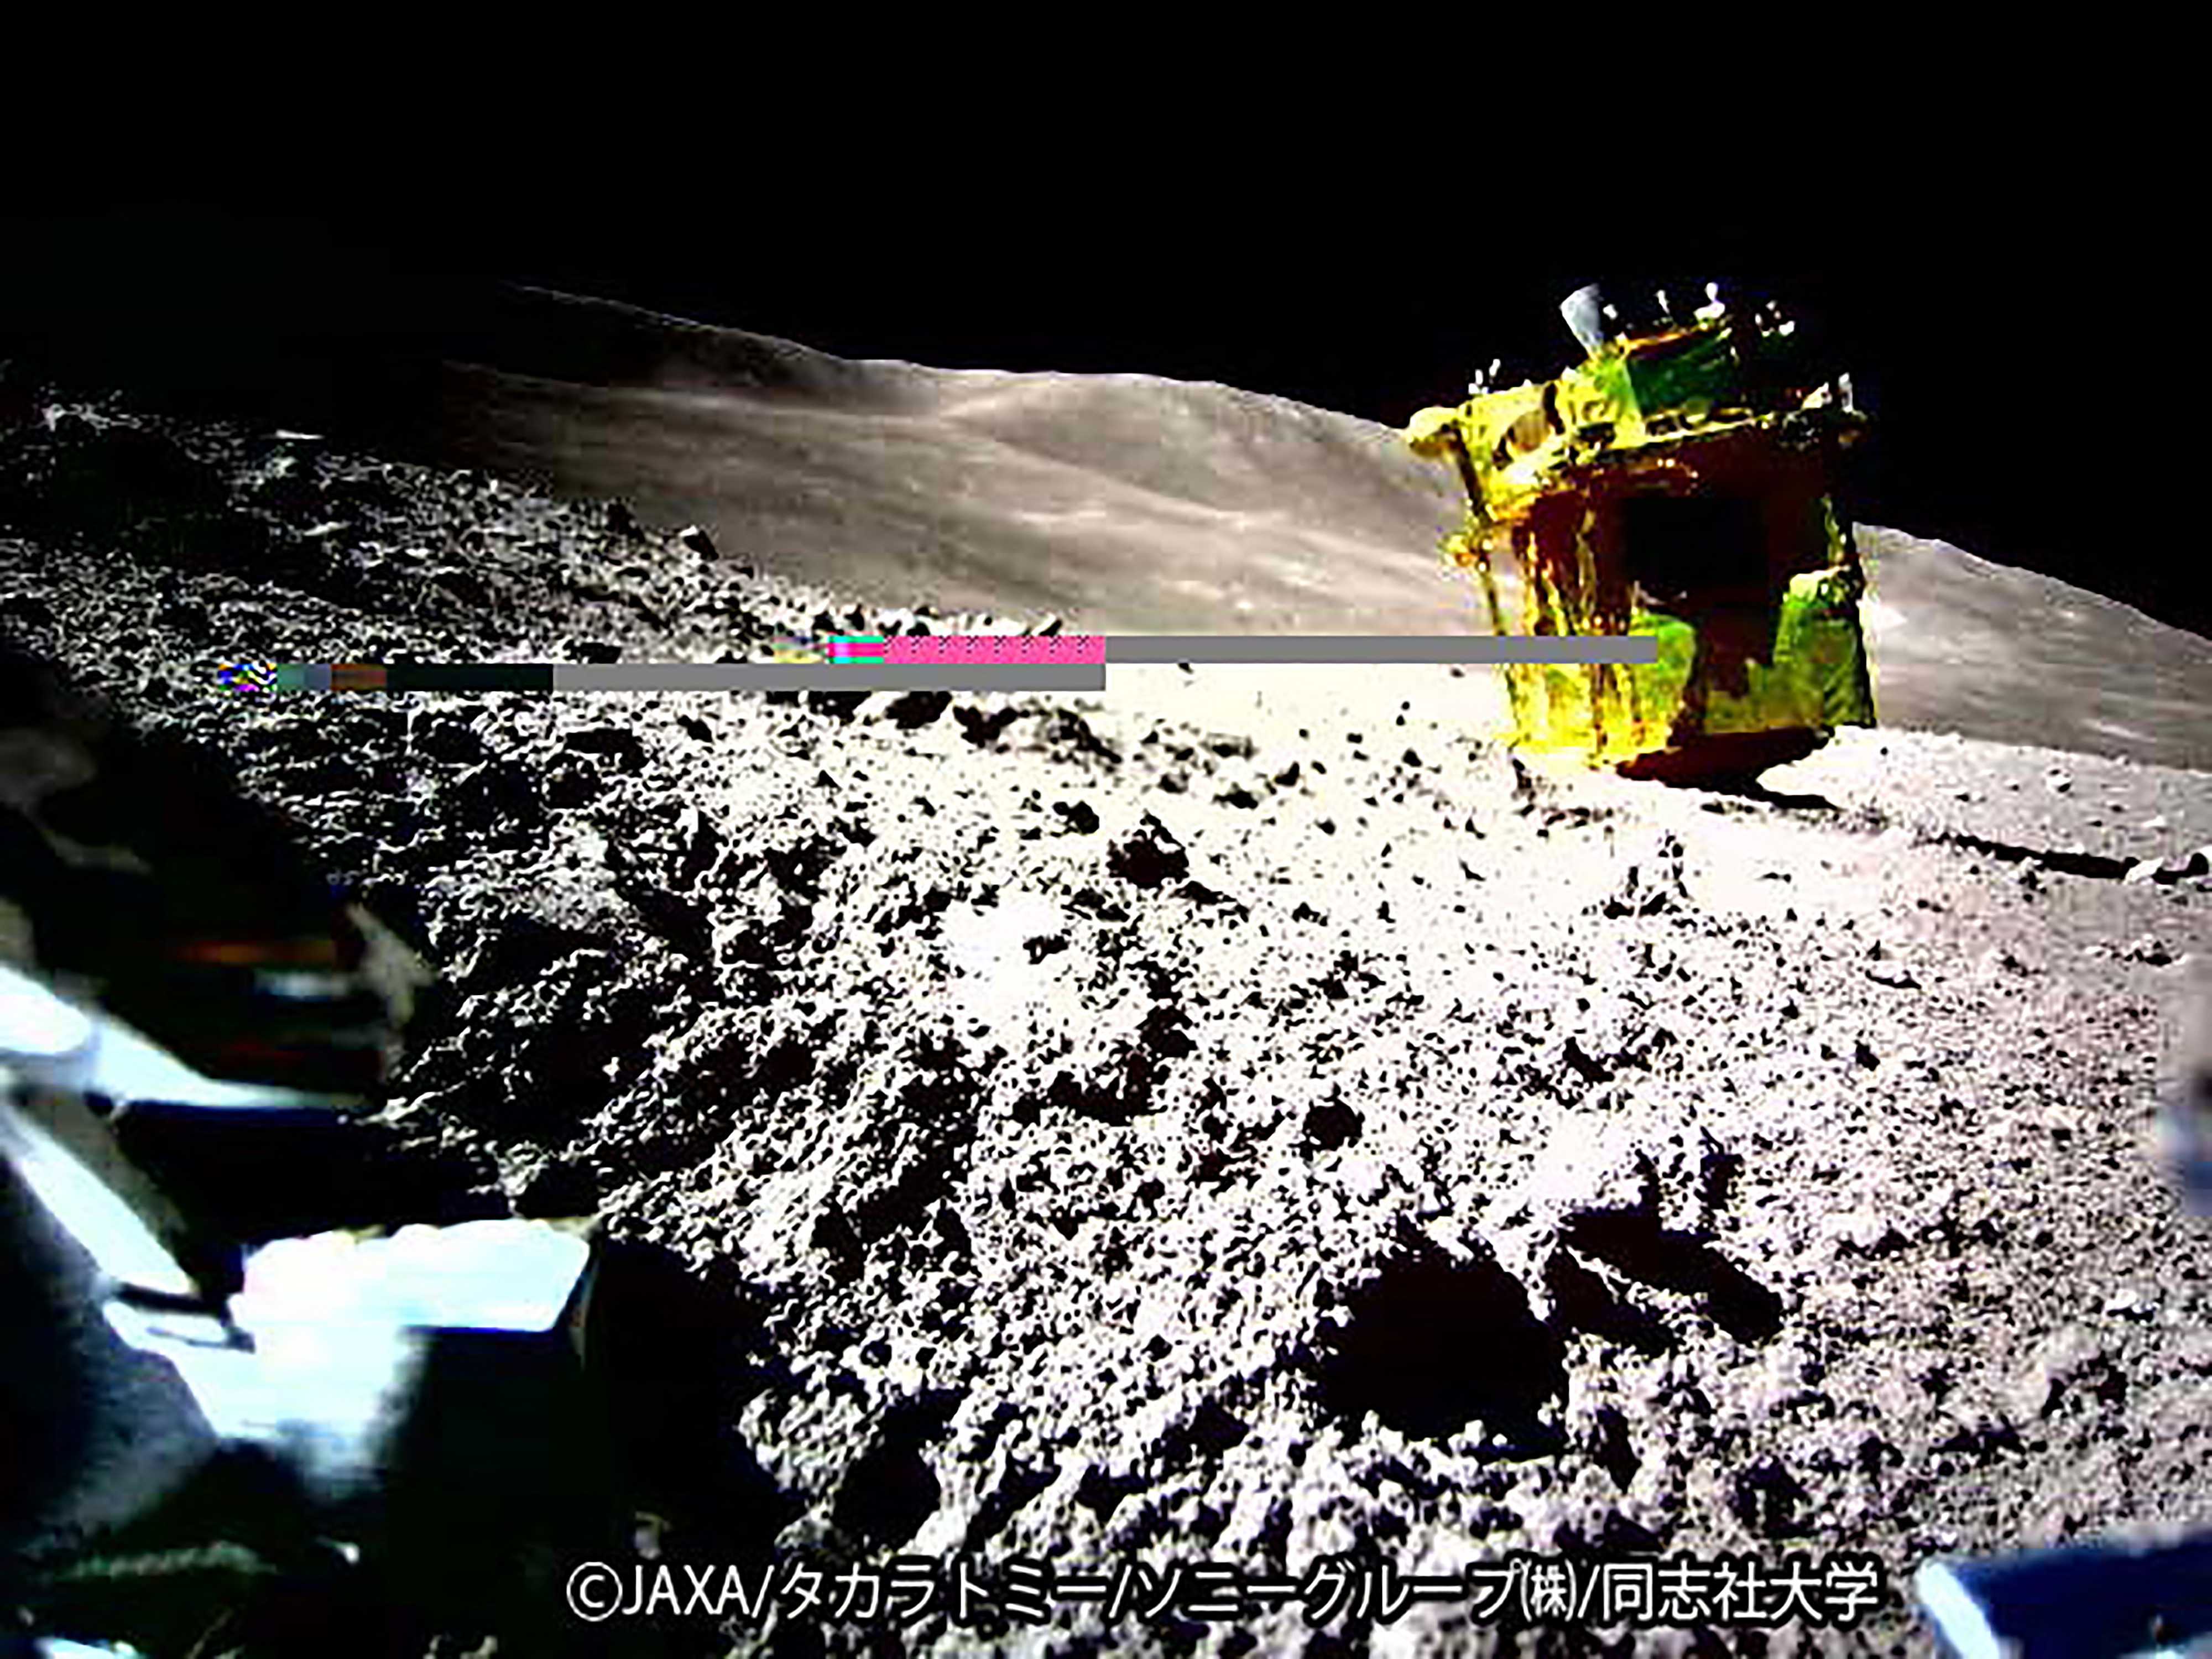 日本の月探査機が再び画像を送信